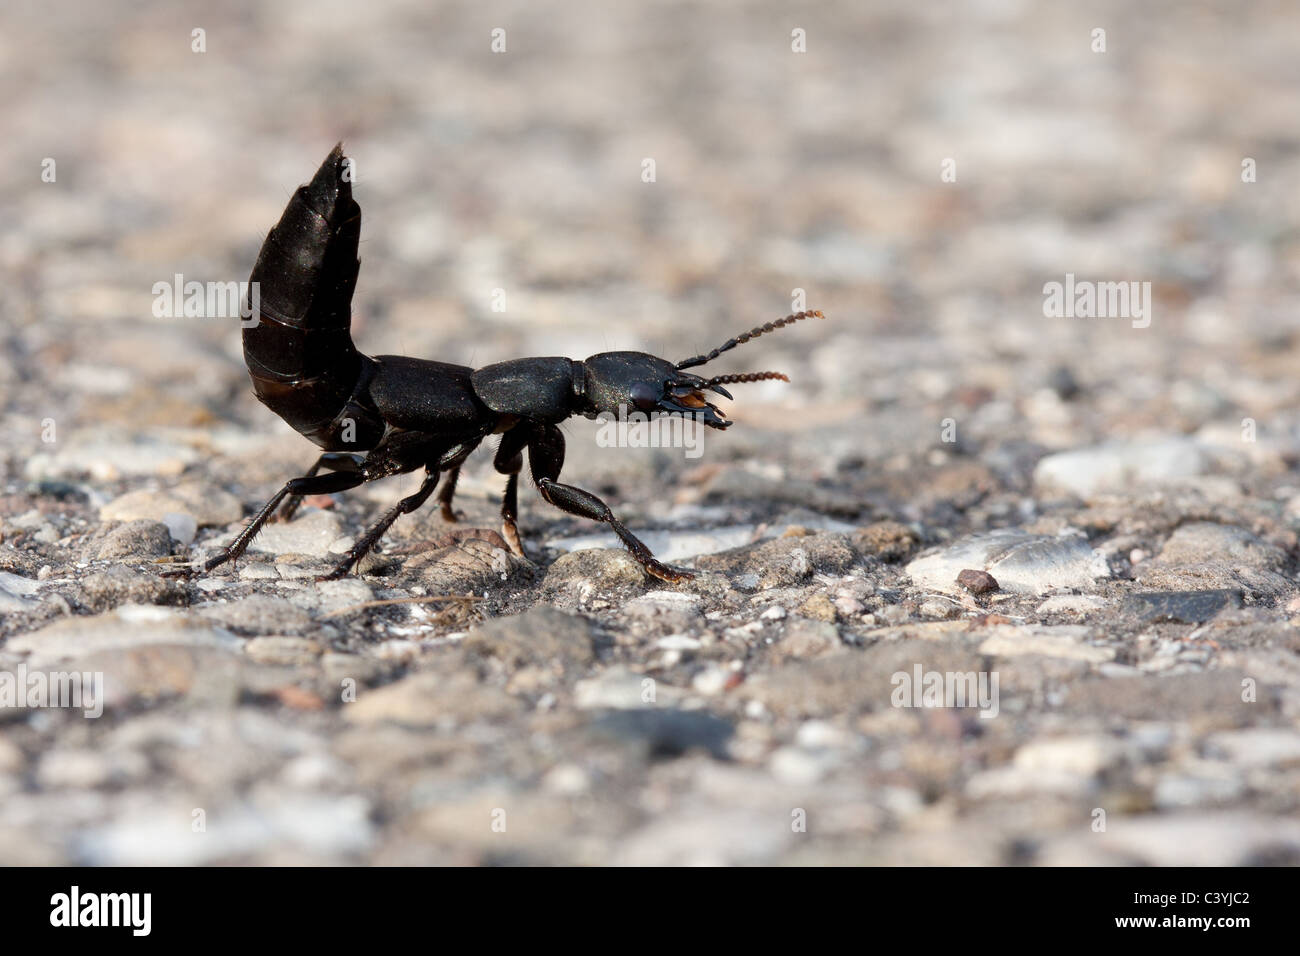 Minuto escarabajo scavenger marrón Foto de stock